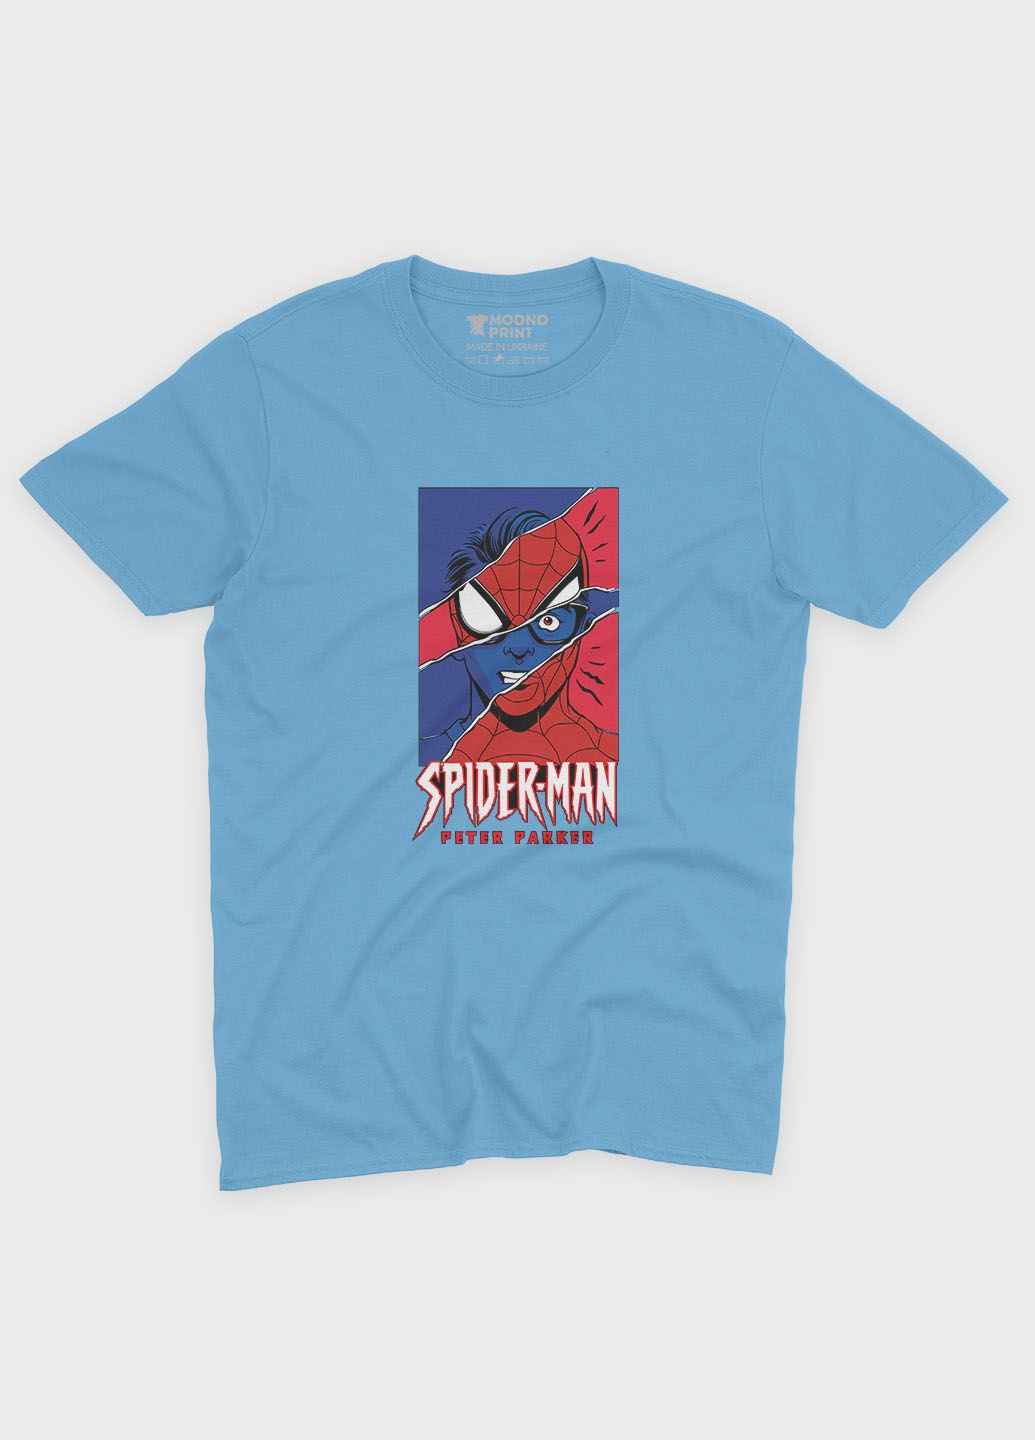 Голубая демисезонная футболка для мальчика с принтом супергероя - человек-паук (ts001-1-lbl-006-014-032-b) Modno